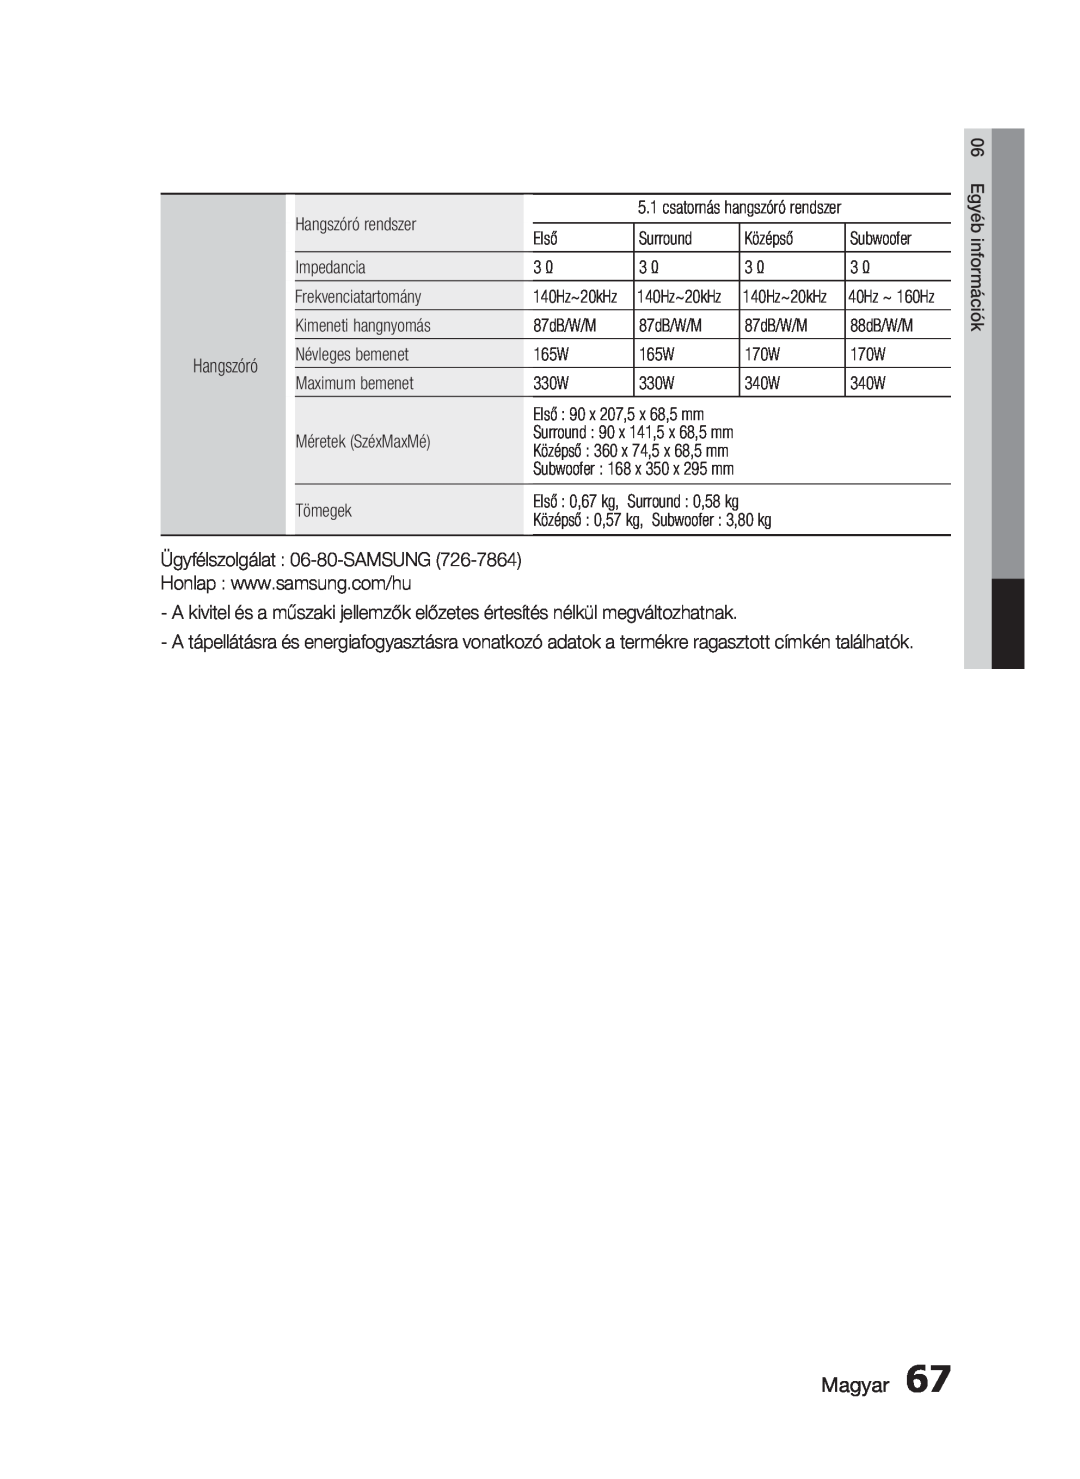 Samsung HT-C5900/XEE manual Magyar, csatornás hangszóró rendszer, 140Hz~20kHz, Surround 90 x 141,5 x 68,5 mm, Első 0,67 kg 